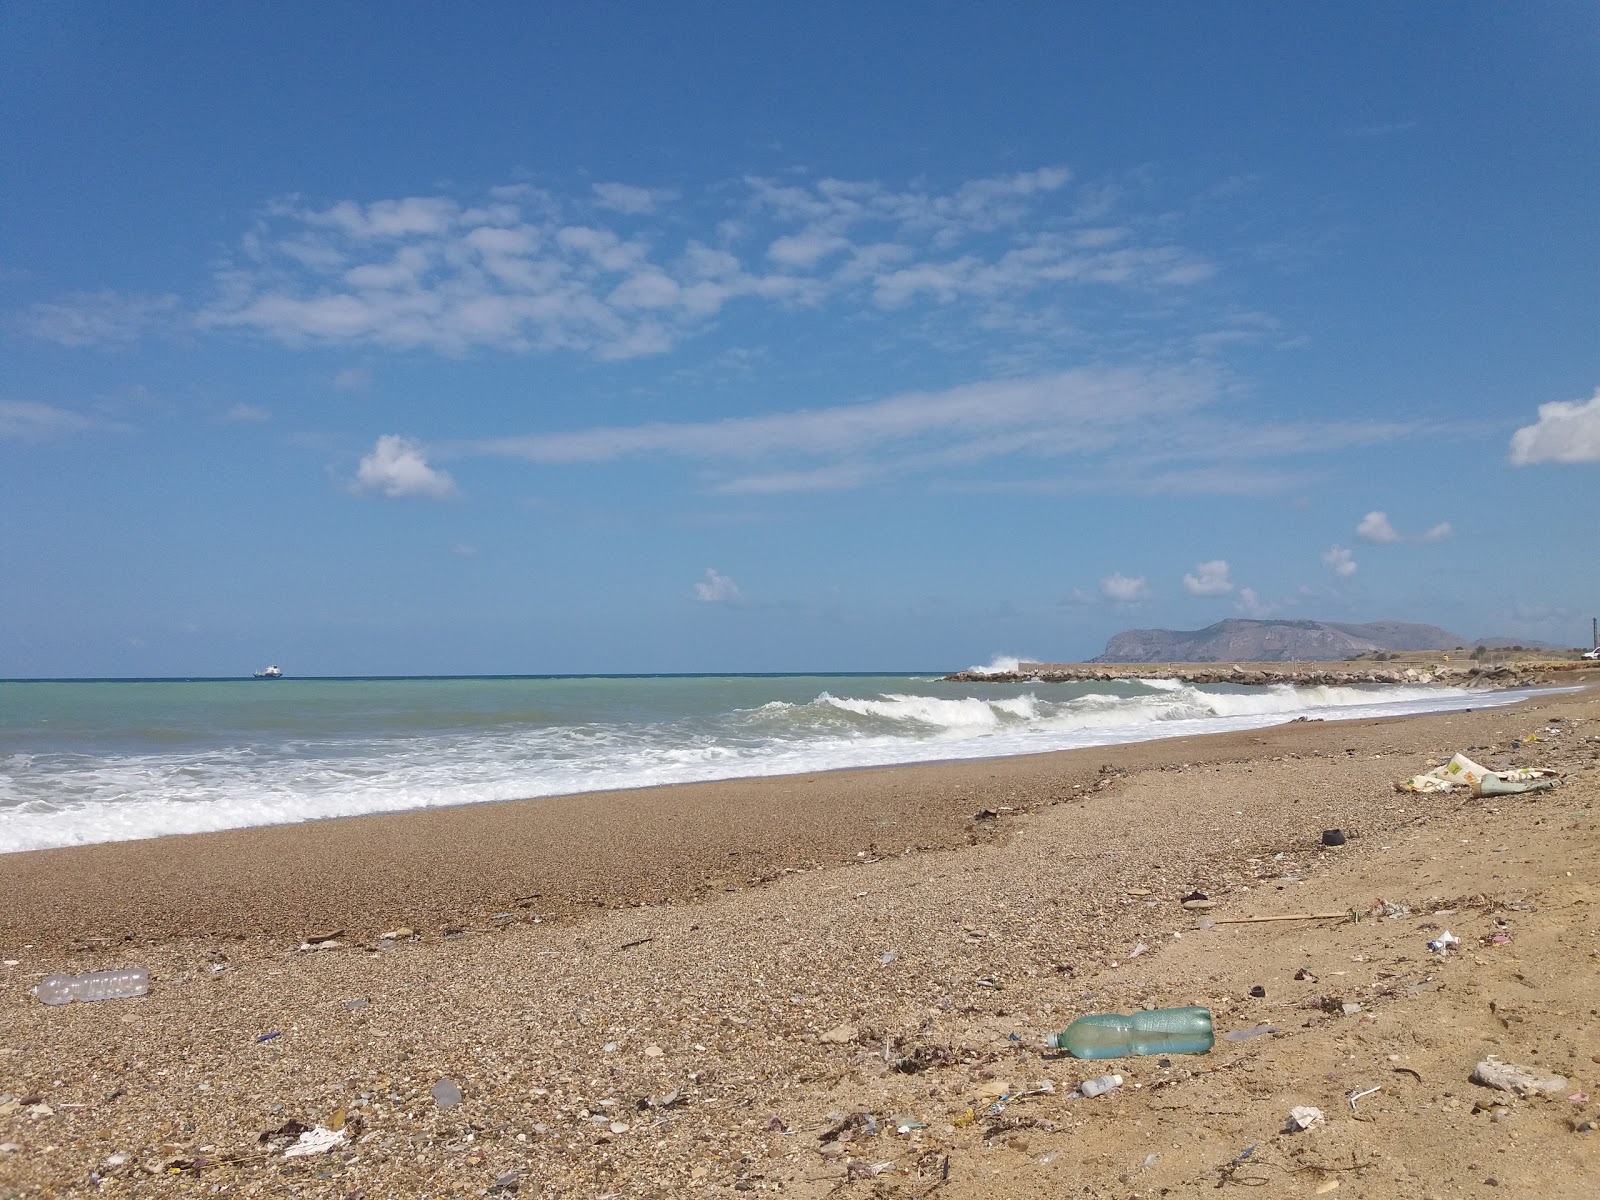 Palermo beach'in fotoğrafı geniş plaj ile birlikte